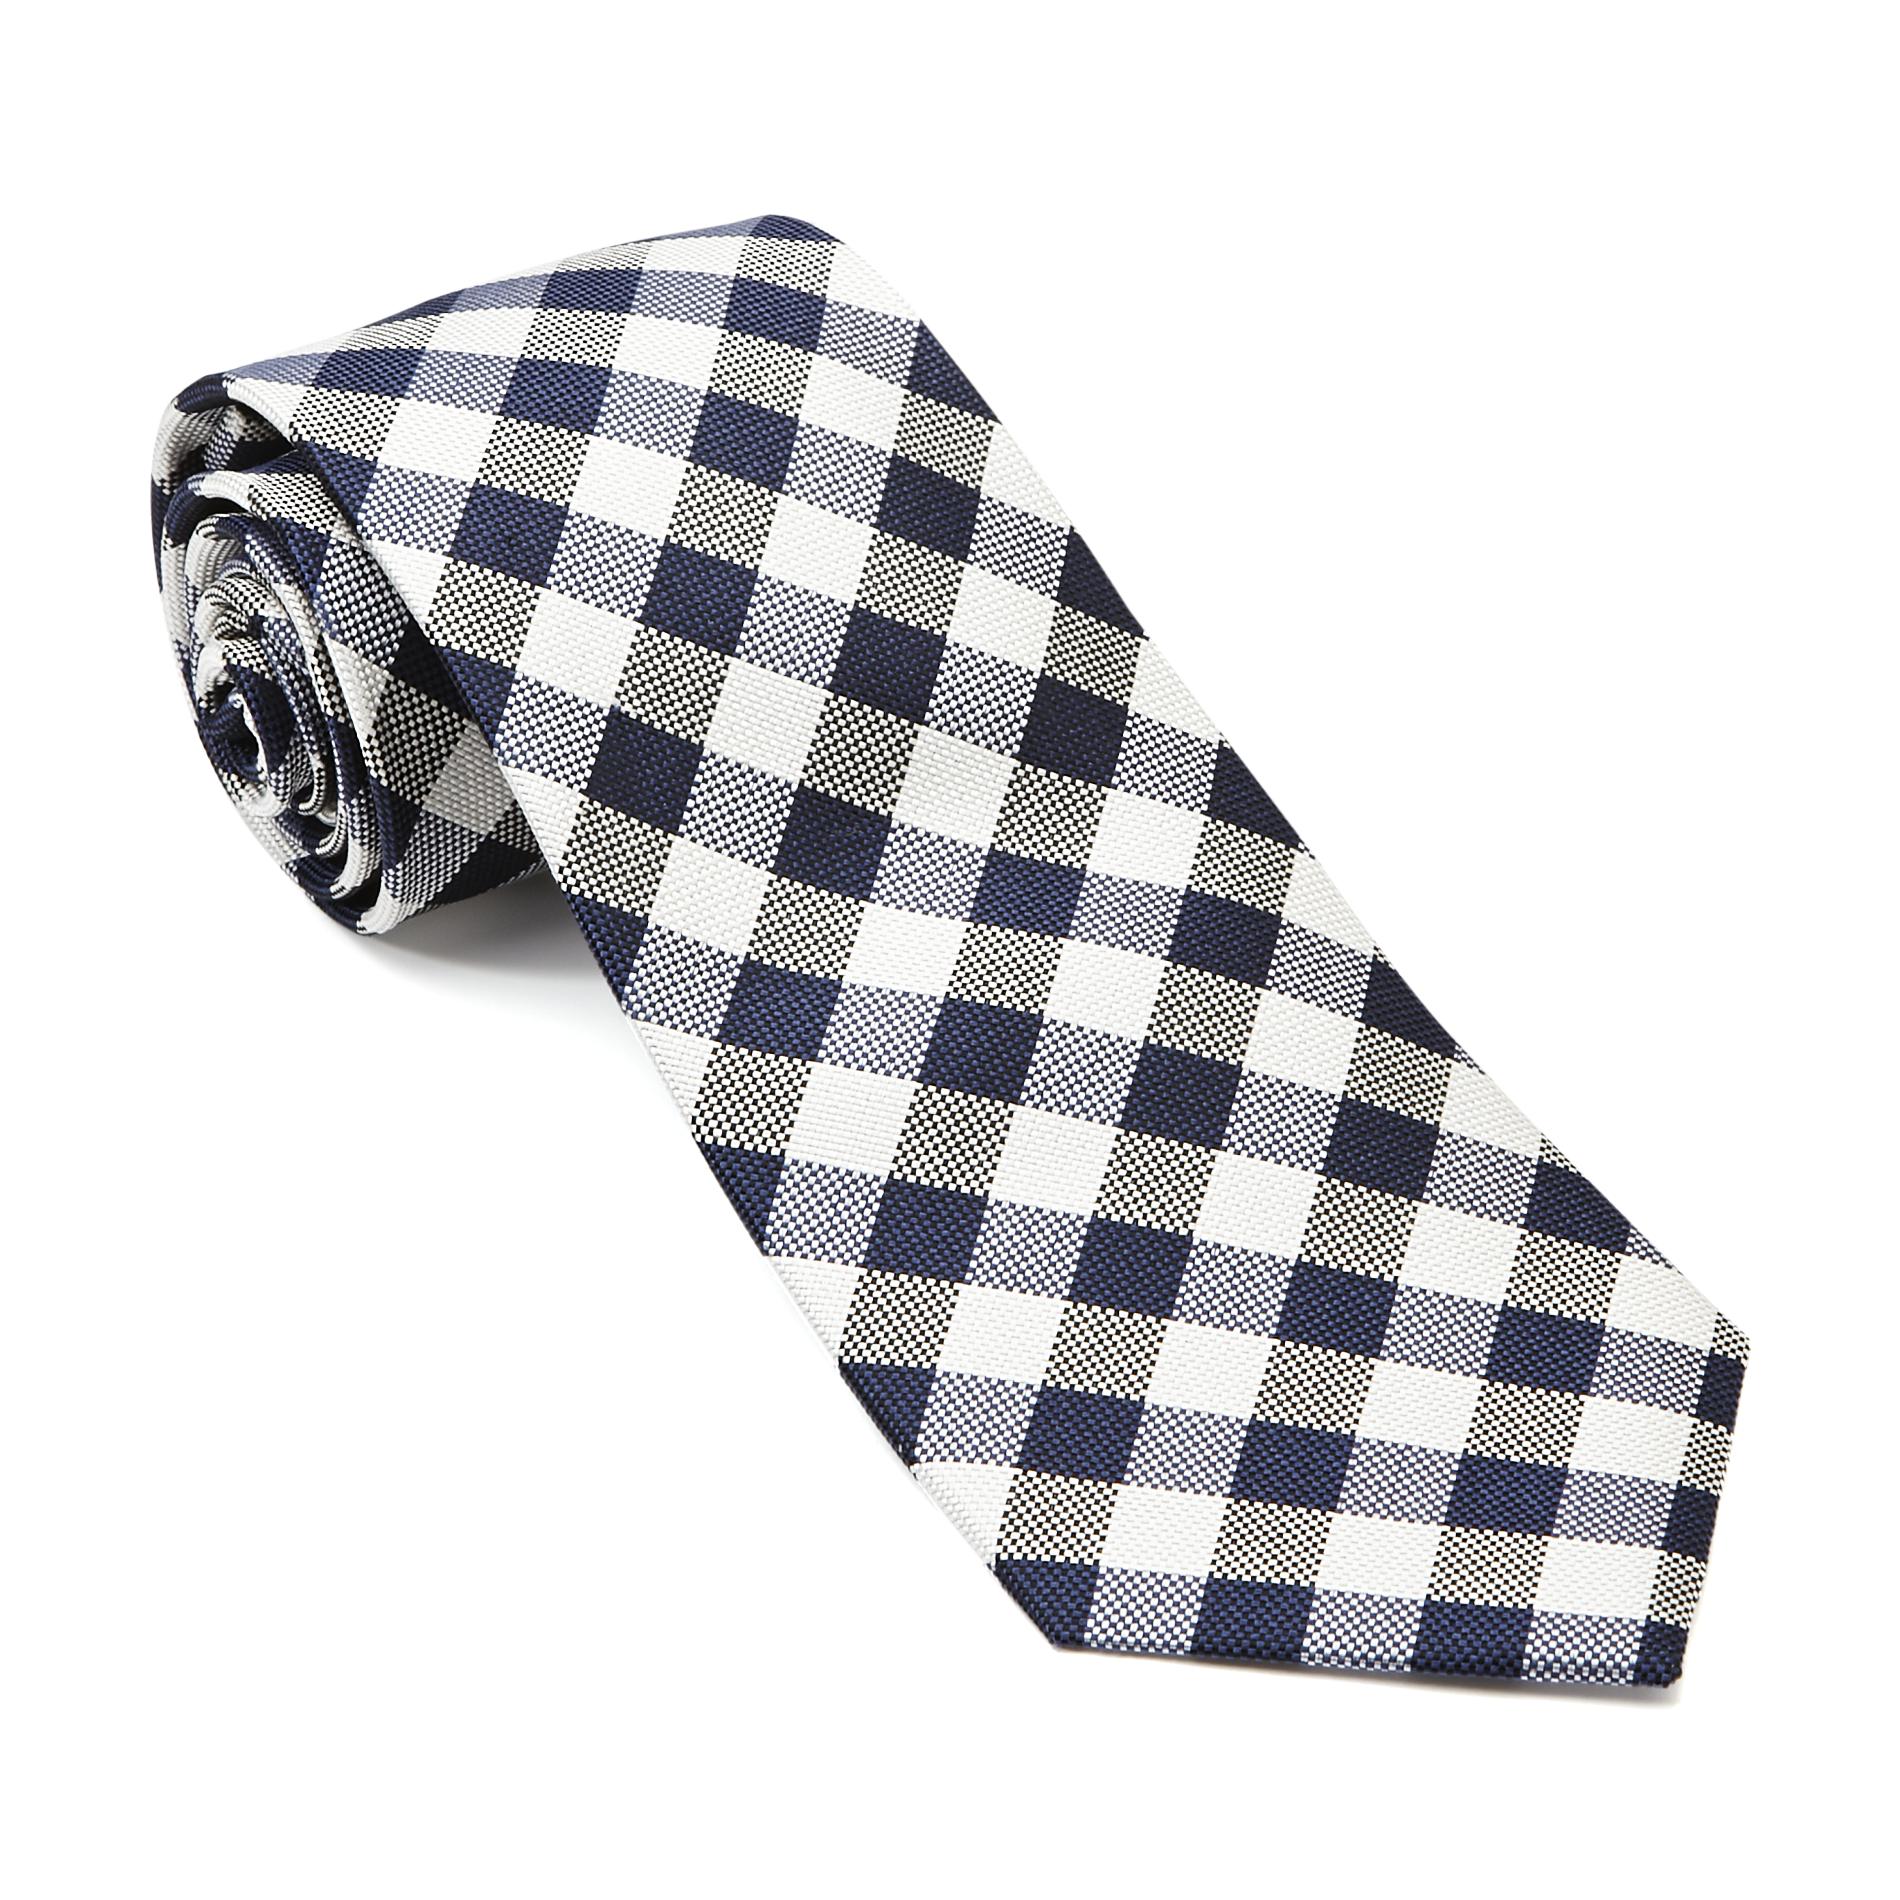 U.S. Polo Assn. Men's Silk Necktie - Checks